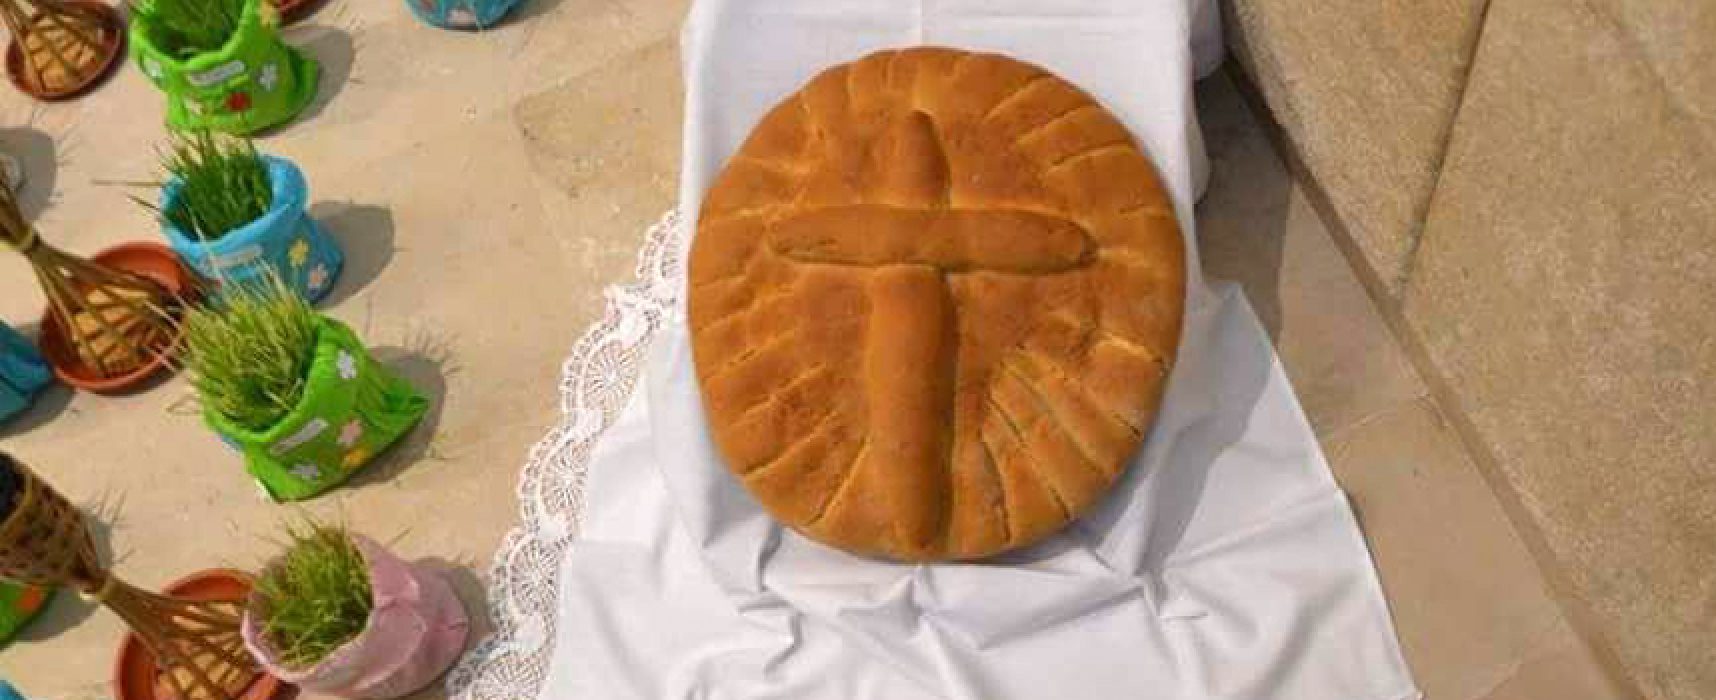 “In parrocchia rifiutata la mia croce di pane per il sepolcro”, la delusione di un panettiere / VIDEO